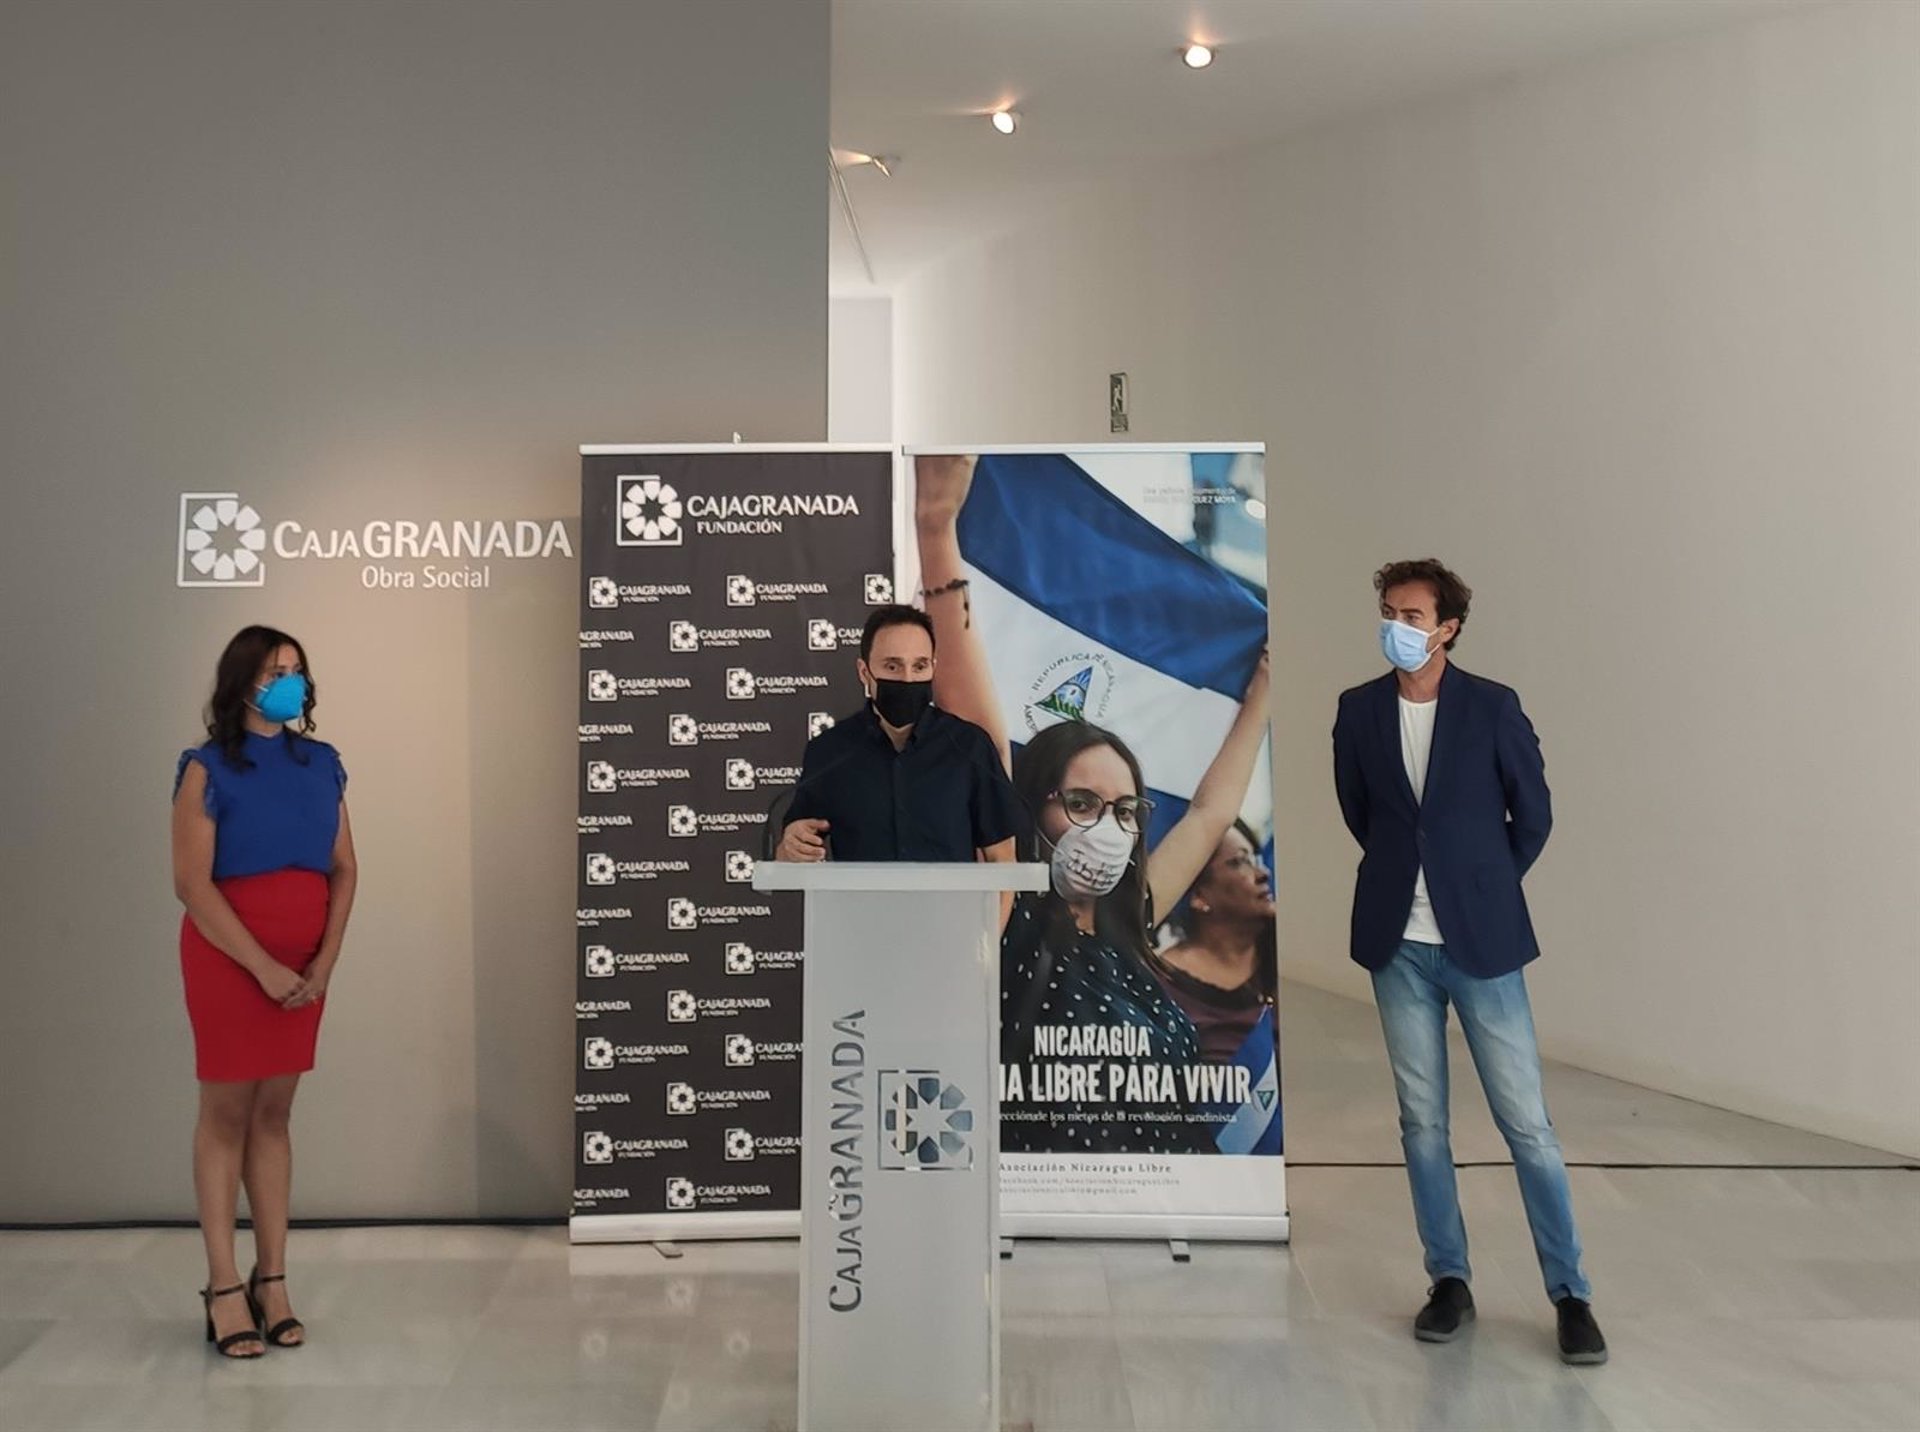 La Biblioteca de Andalucía acoge la proyección de ‘Nicaragua, patria libre para vivir’ este próximo lunes